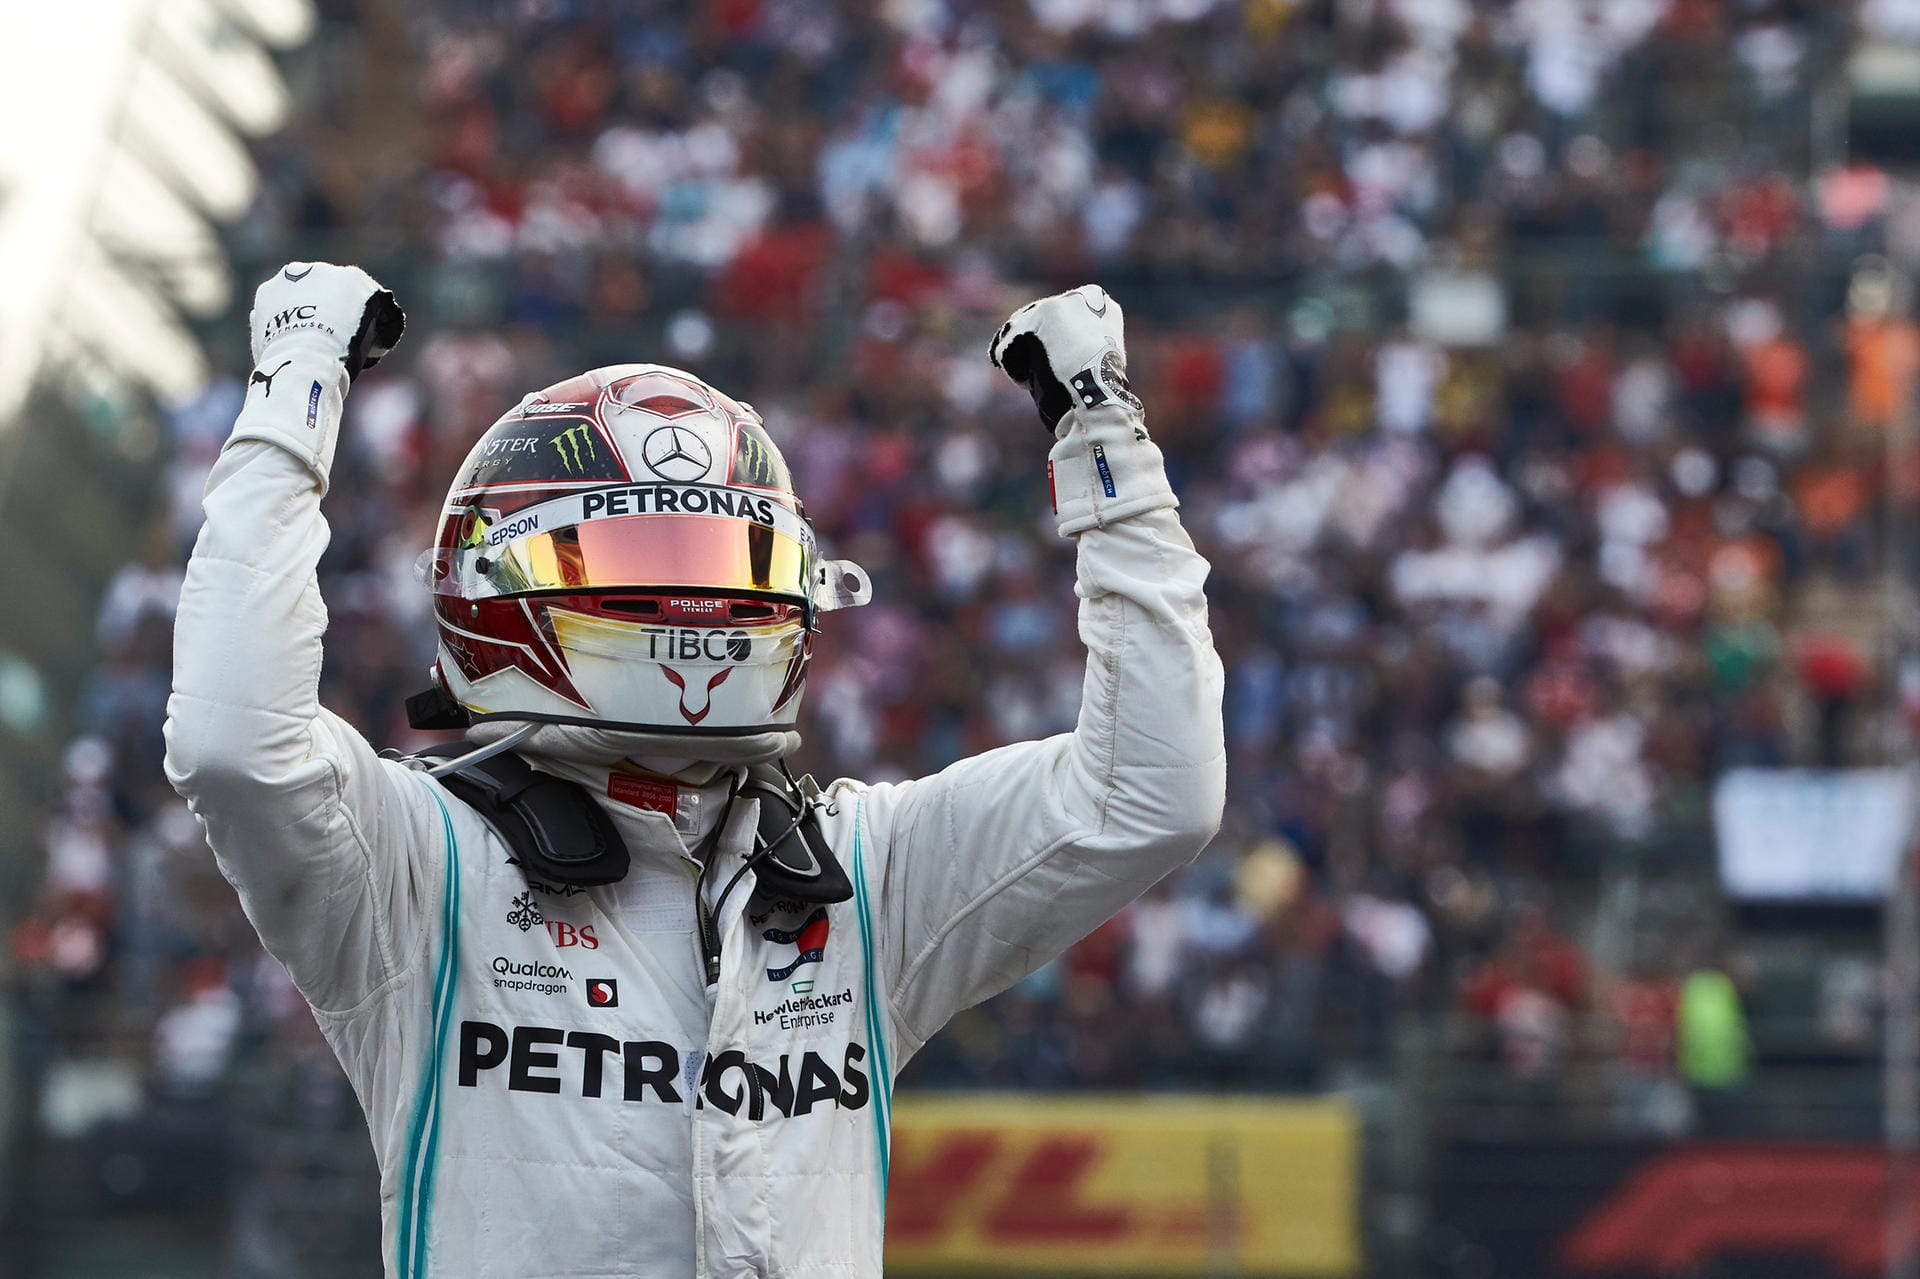 La Gazzetta dello Sport (Italien): "Und es sind 83. Lewis Hamilton hört nie auf. Auch in einem schwierigen Rennen wie in Mexiko fand er gegen die anscheinend stärkeren Ferrari und Red Bull seinen Weg so, wie nur er es kann."